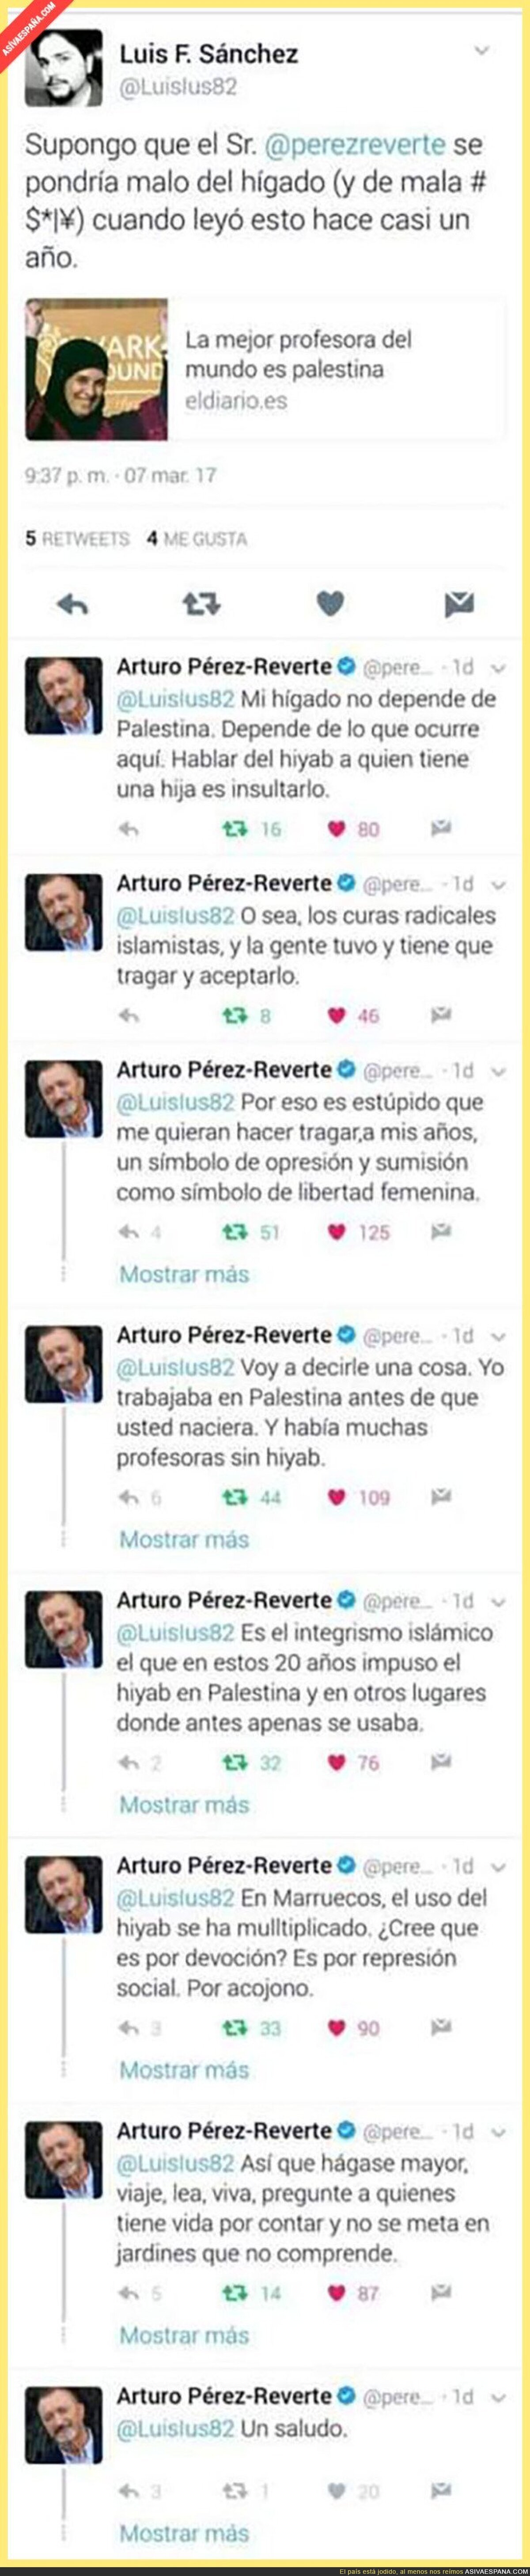 La tremenda sacada de Arturo Pérez-Reverte respondiendo a este tuit